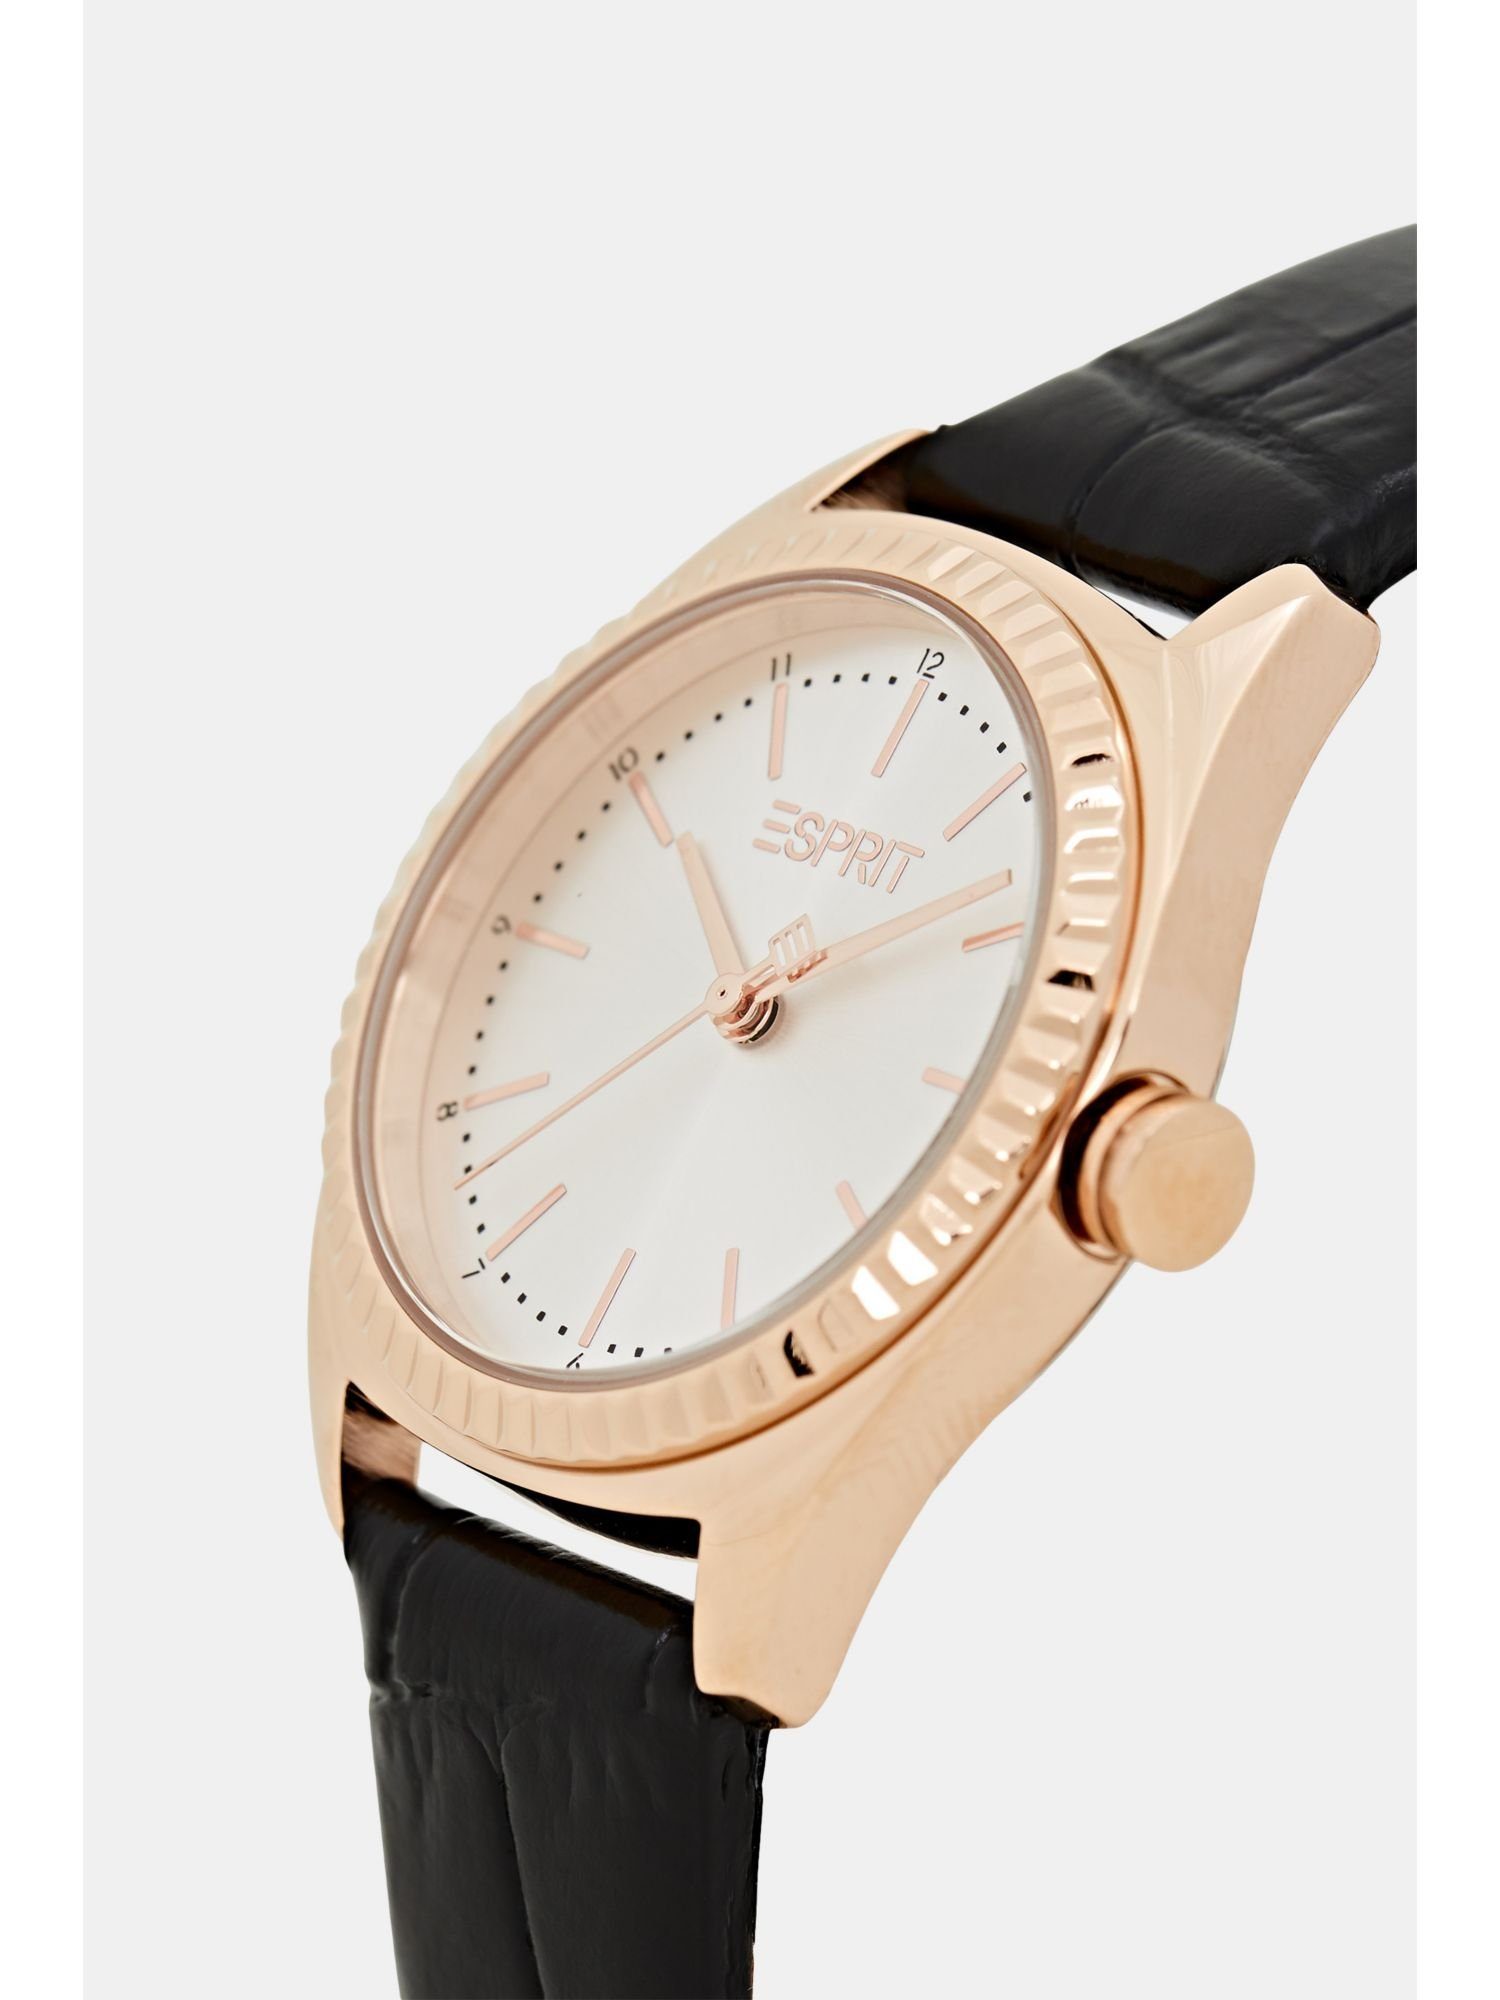 Damen Uhren Esprit Quarzuhr Edelstahl-Uhr mit strukturiertem Lederarmband